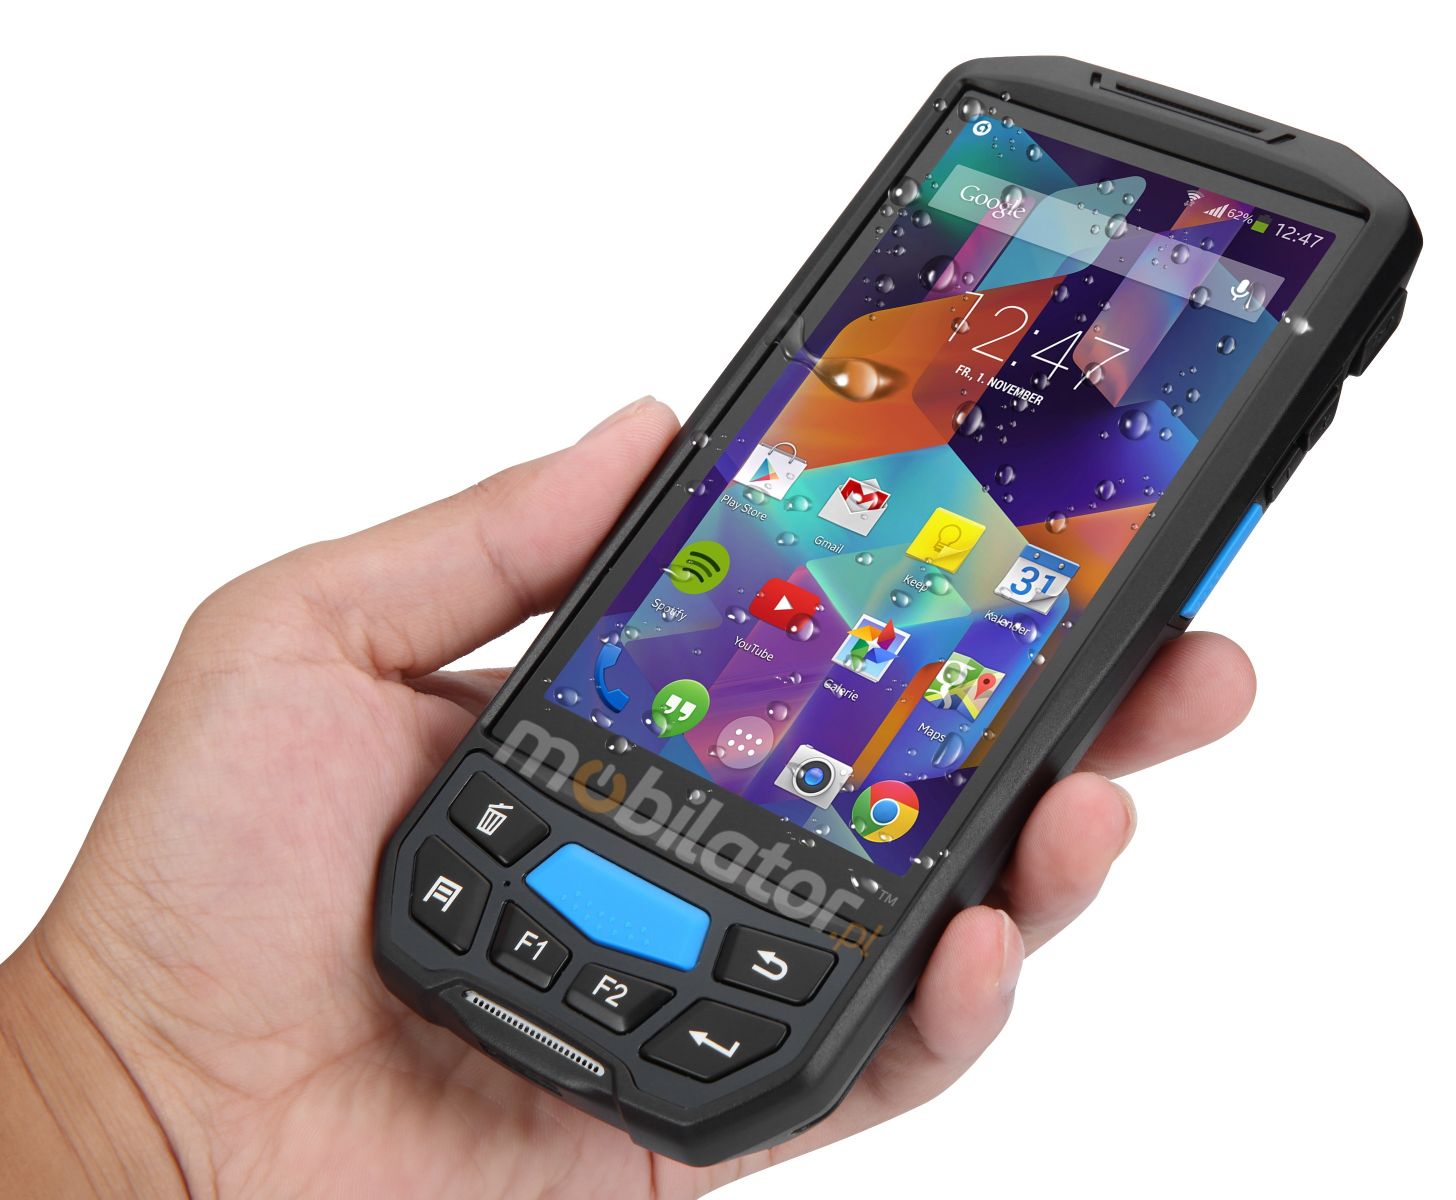 Nowoczesny Wzmocniony Odporny Mobilny Kolektor Danych MobiPad U90 Android WiFi Skaner 2D RFID UHF